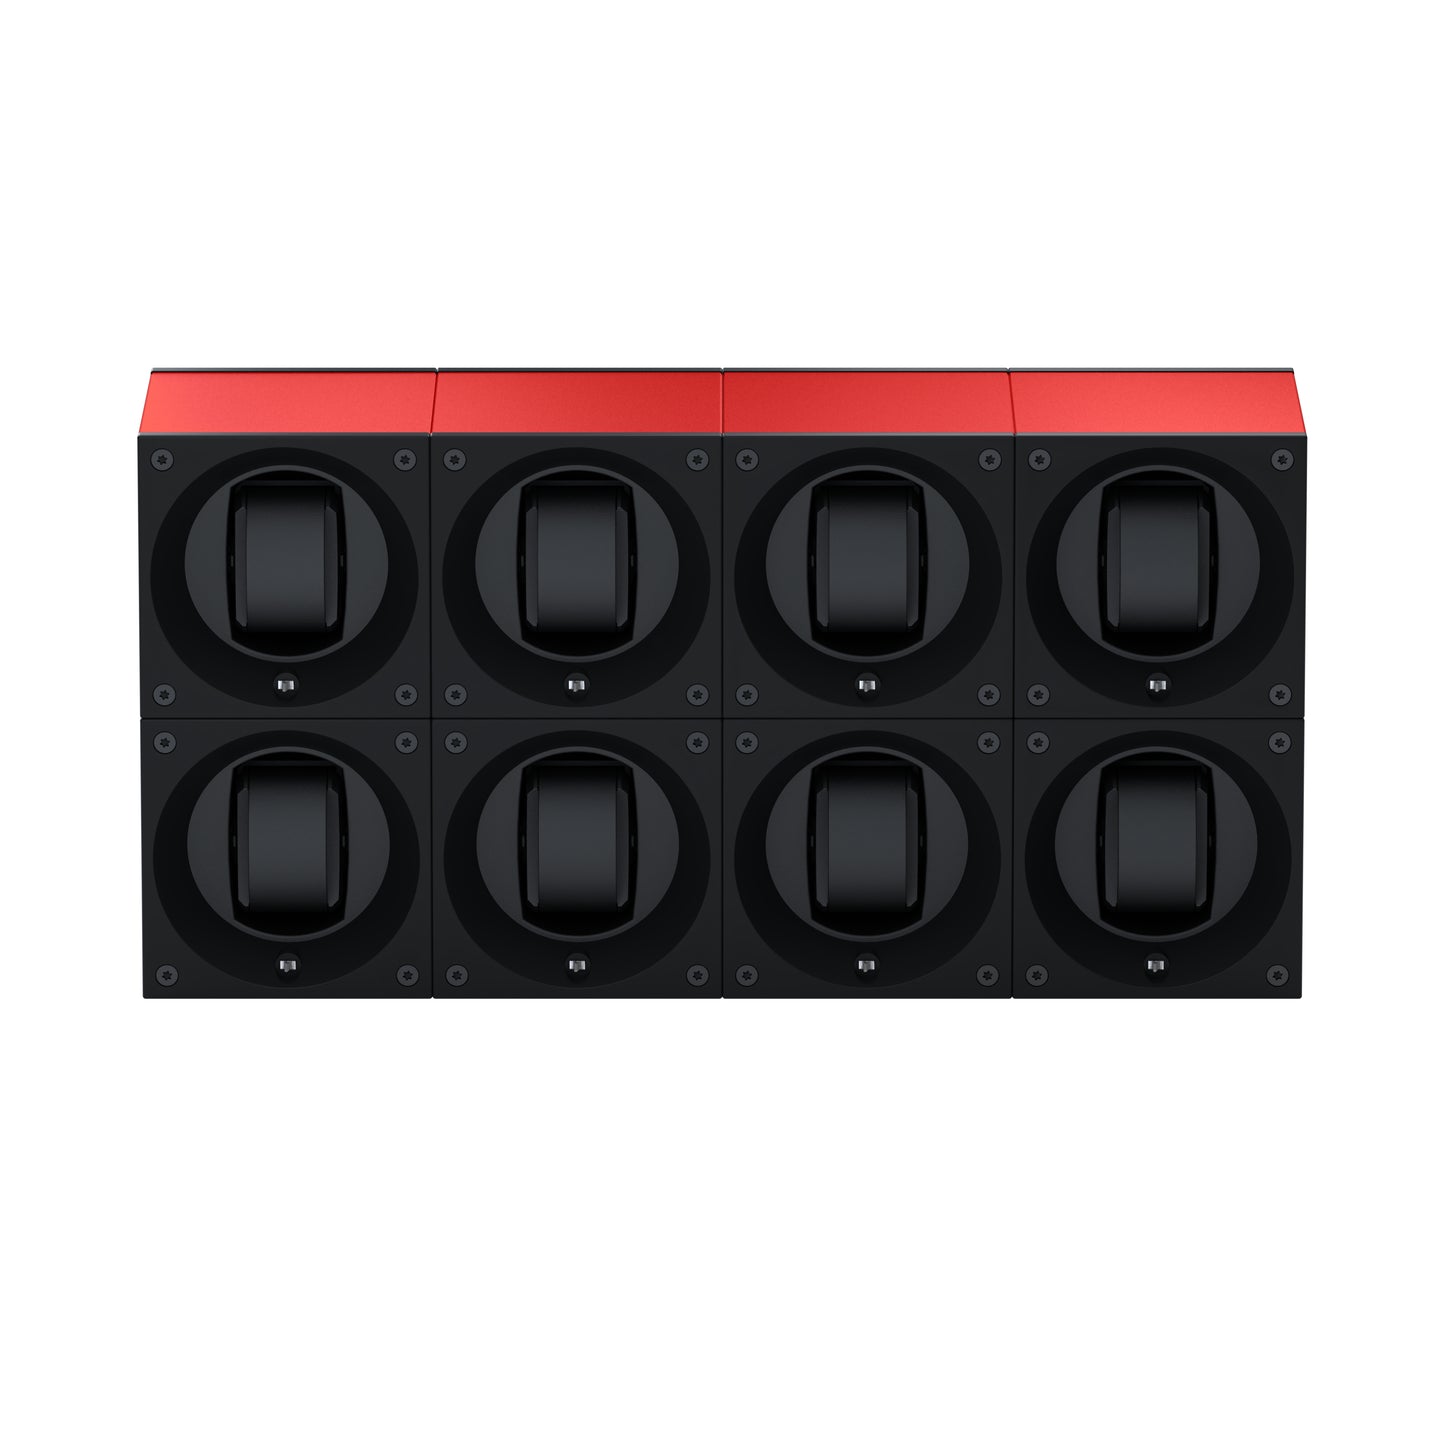 Masterbox 8 montres Aluminium Rouge : écrin rotatif pour montre automatique